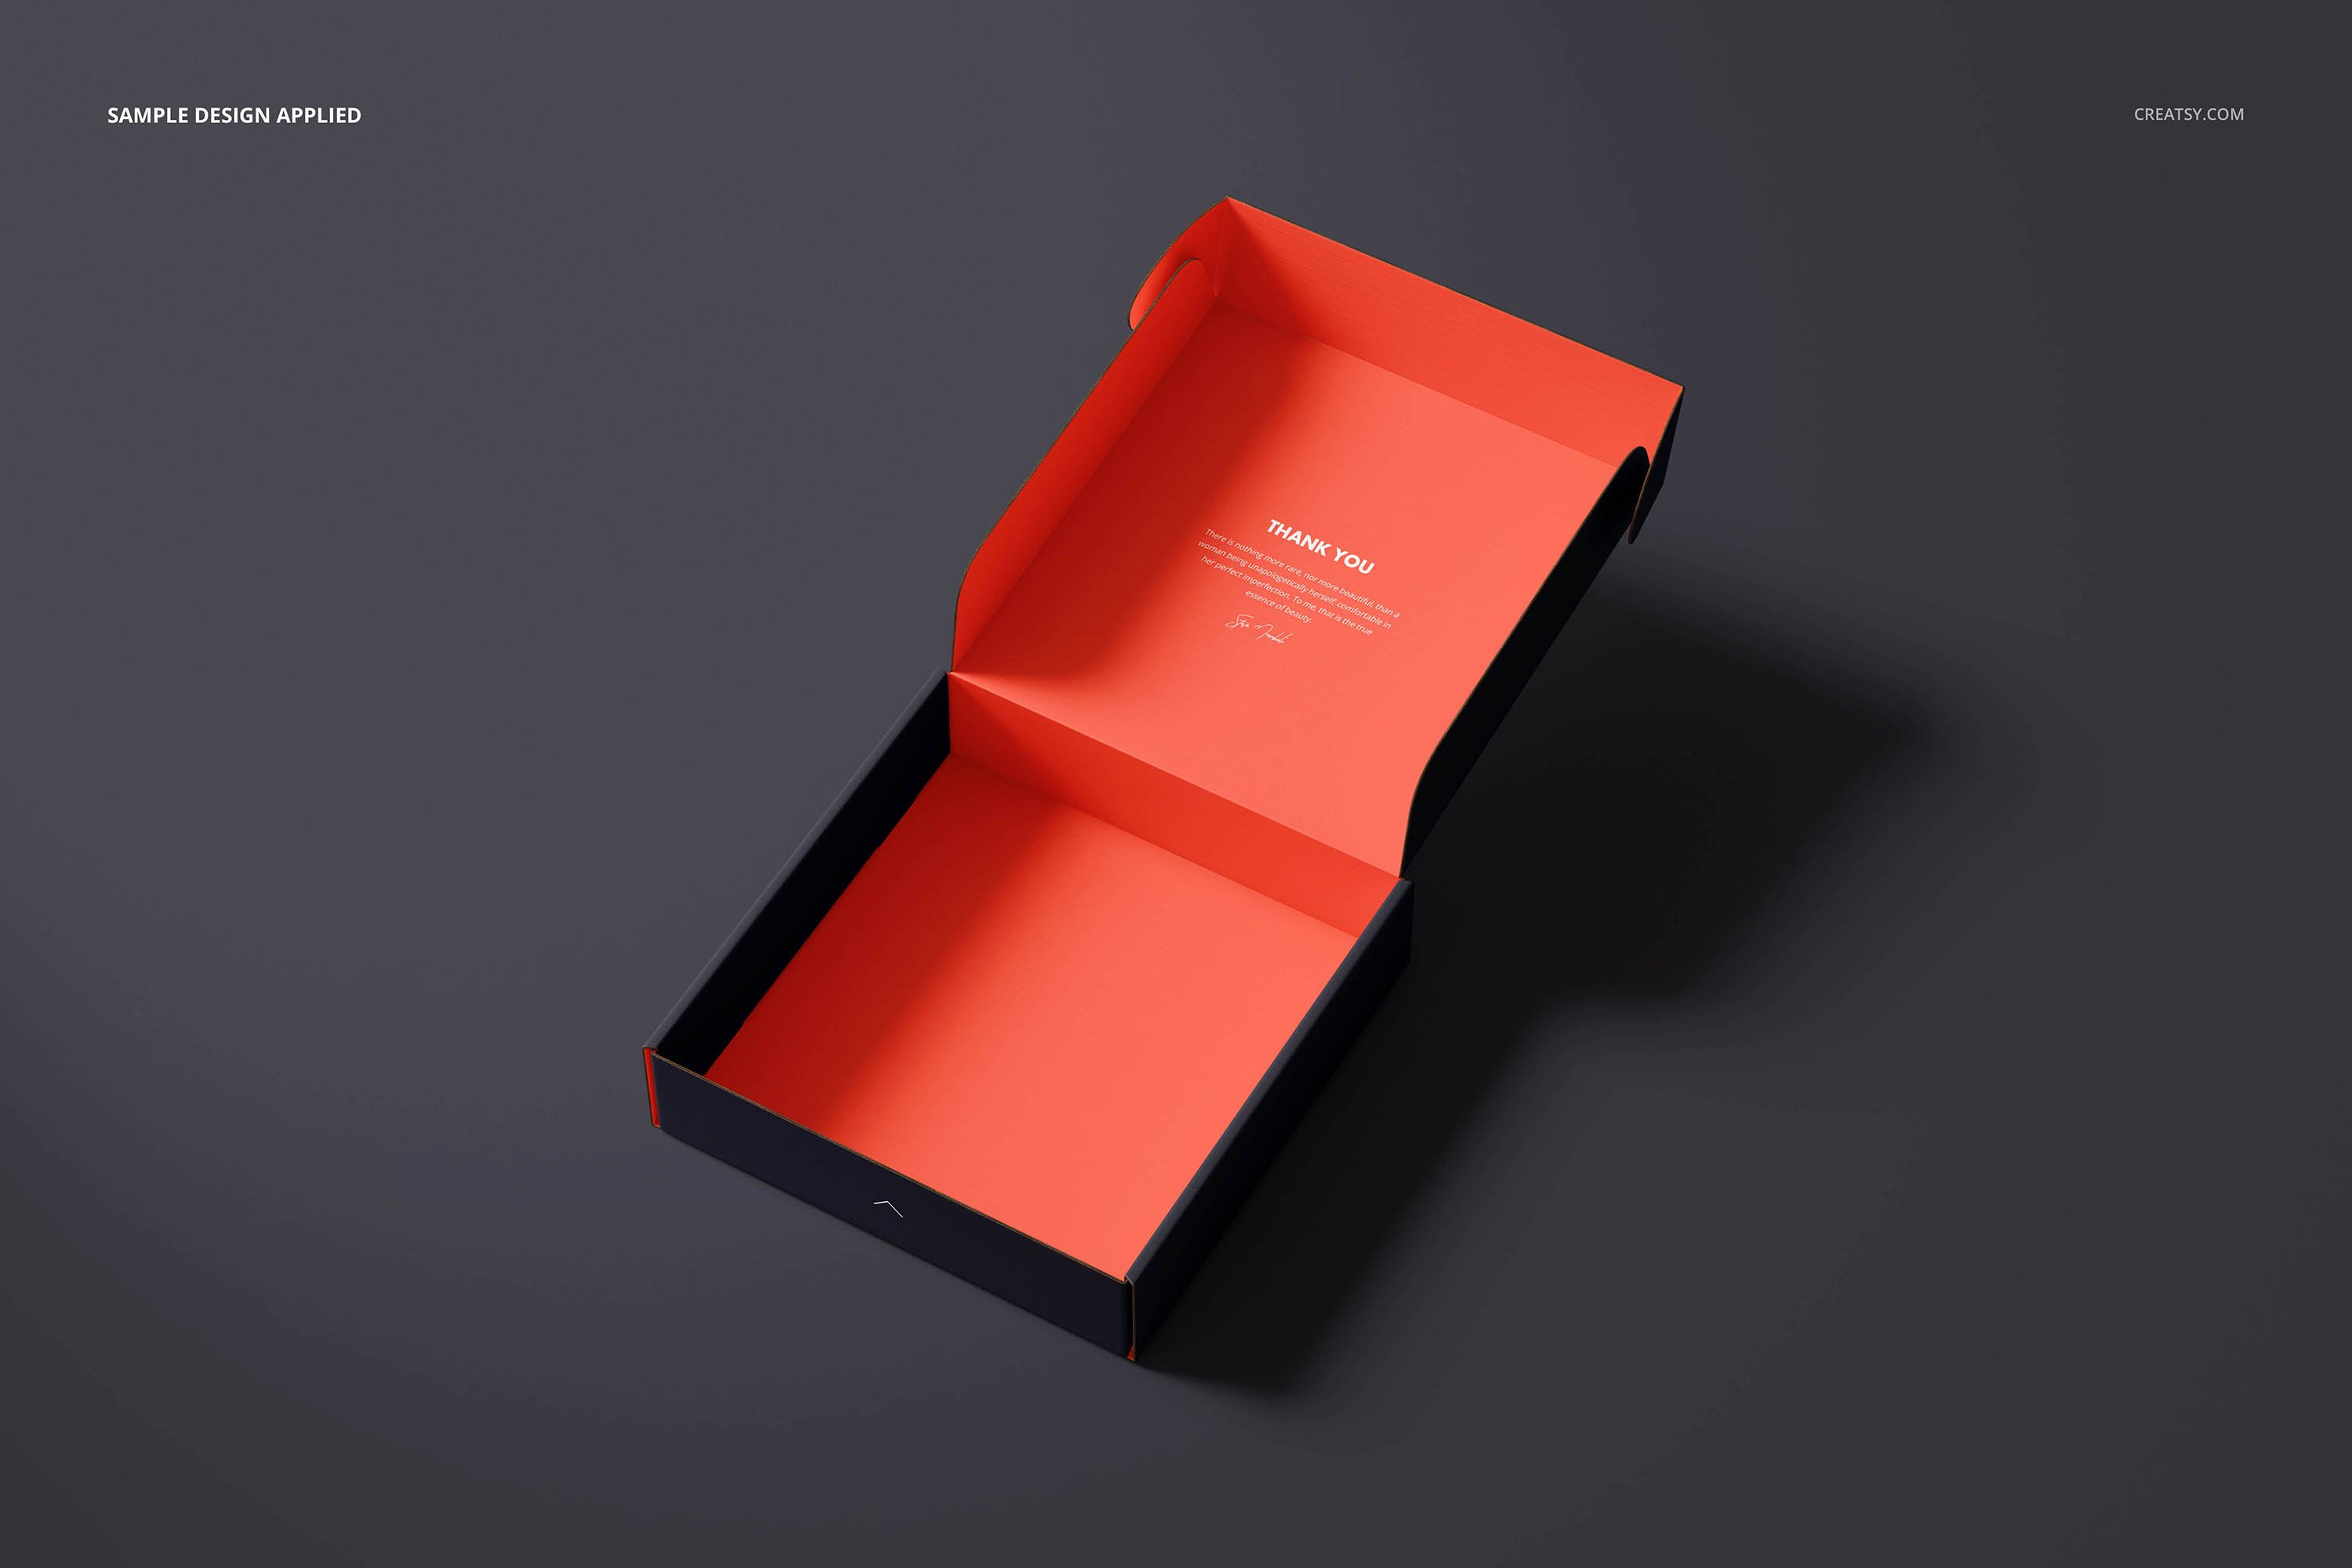 05 高端逼真产品包装盒快递物料邮件纸盒设计Ps智能贴图样机 Mailing Box Mockup Set 4